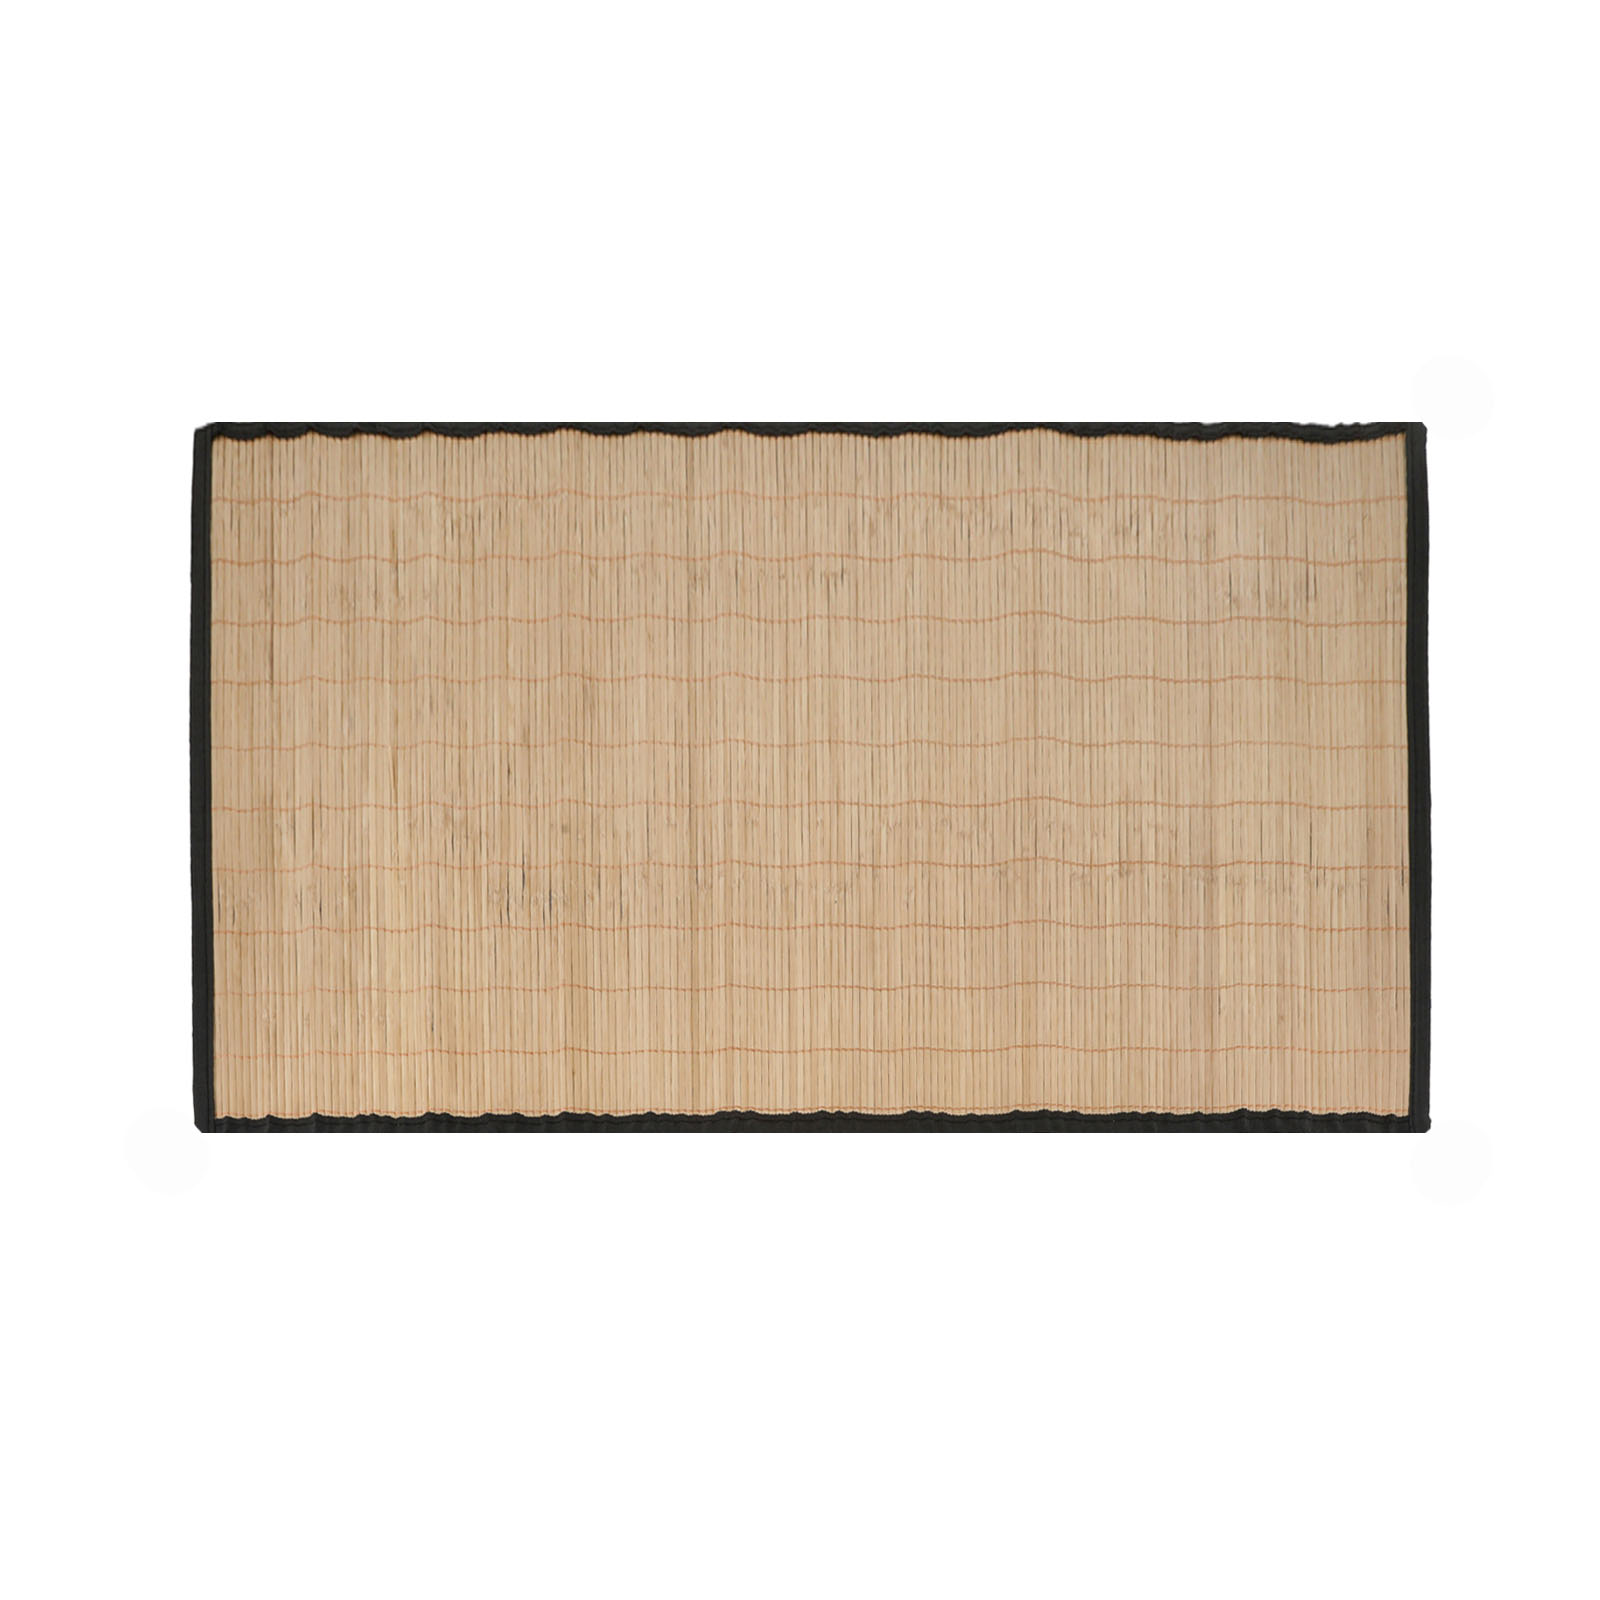 Bambusmatte 60 x 90 cm Rutschfest Bambus Bad Küche Flur Läufer Teppich Vorleger | Bambusmatte